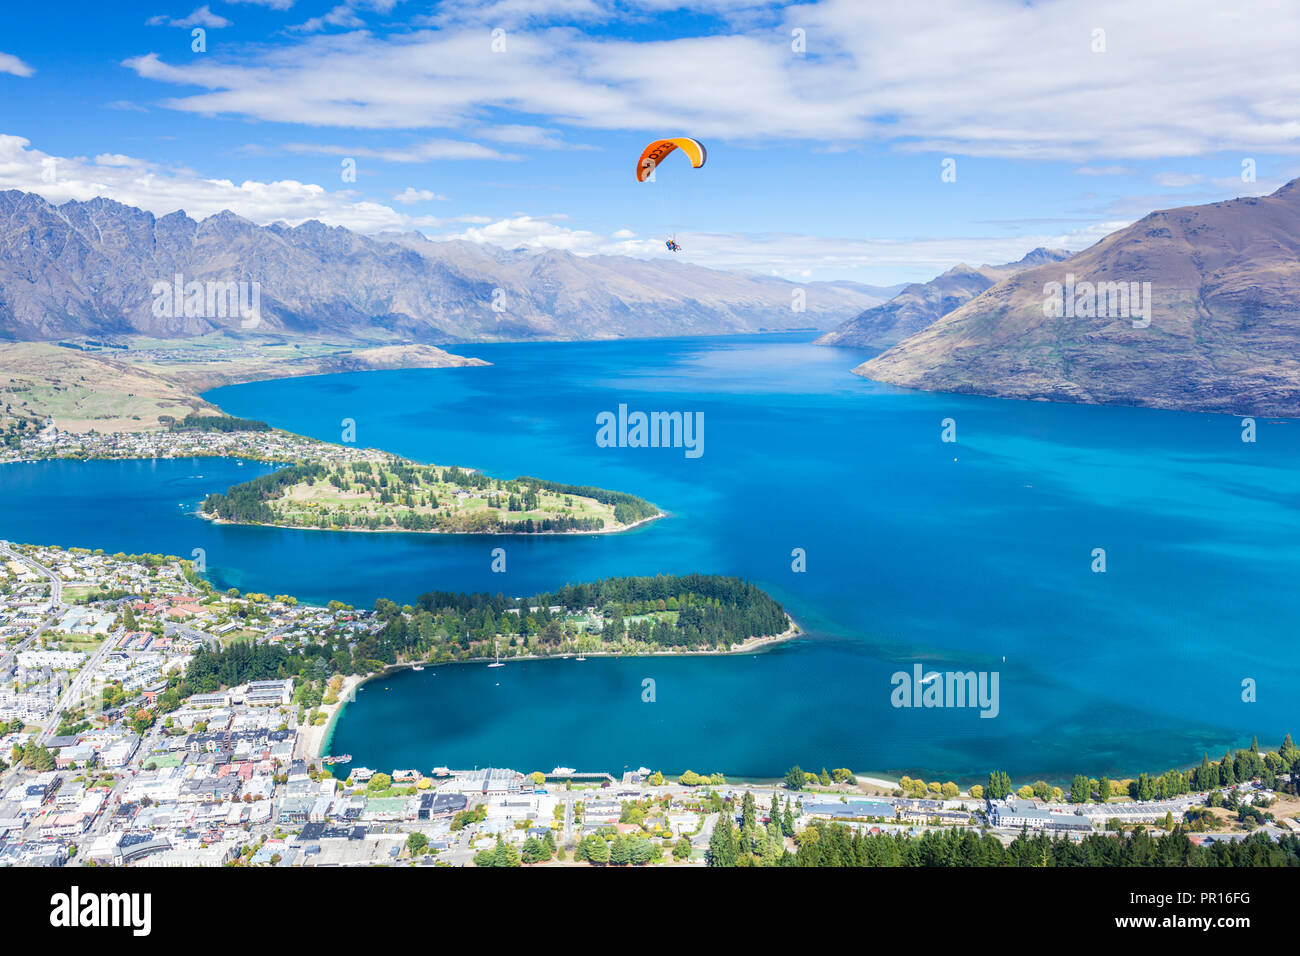 Vista aerea di Queenstown, parapendio, sul lago Wakatipu e sulle montagne Remarkables, Queenstown, Otago, South Island, in Nuova Zelanda, Pacific Foto Stock